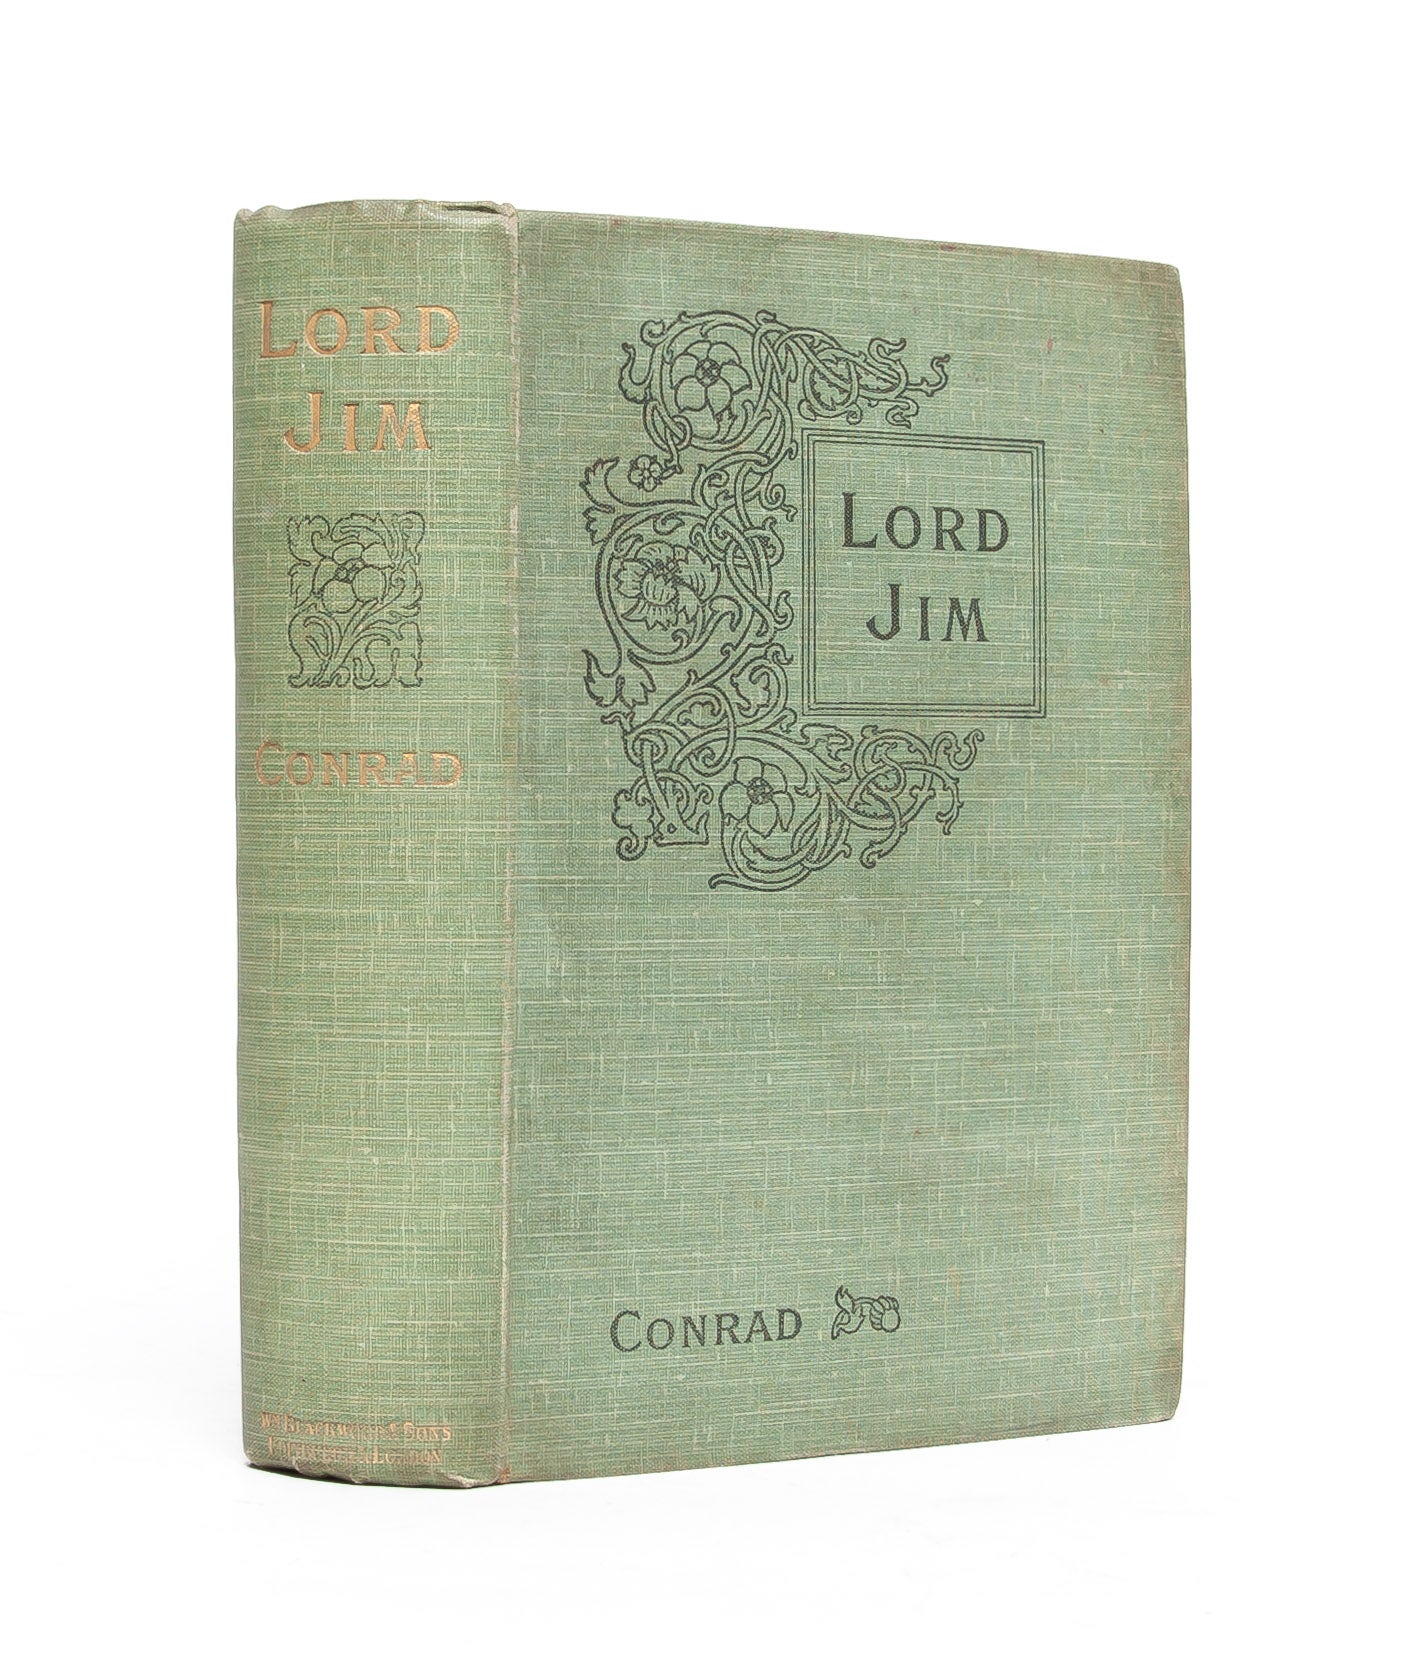 (Item #5135) Lord Jim. A Tale. Joseph Conrad.